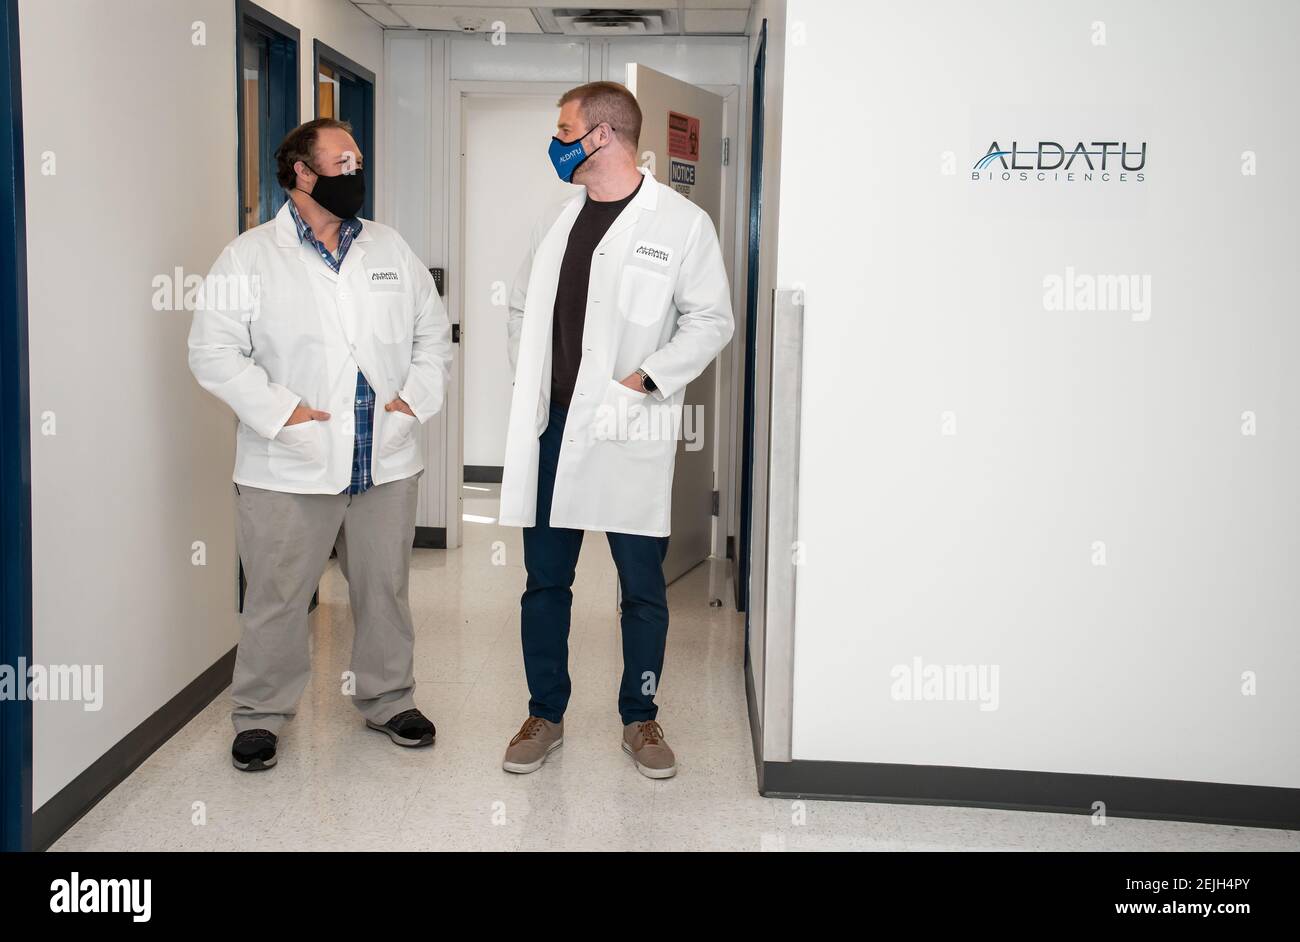 Aldatu Biosciences à Watertown, a développé un test rapide pour la détection COVID-19 appelé PANDAA QDX™ SARS-CoV-2 utilisé à Boston. Banque D'Images